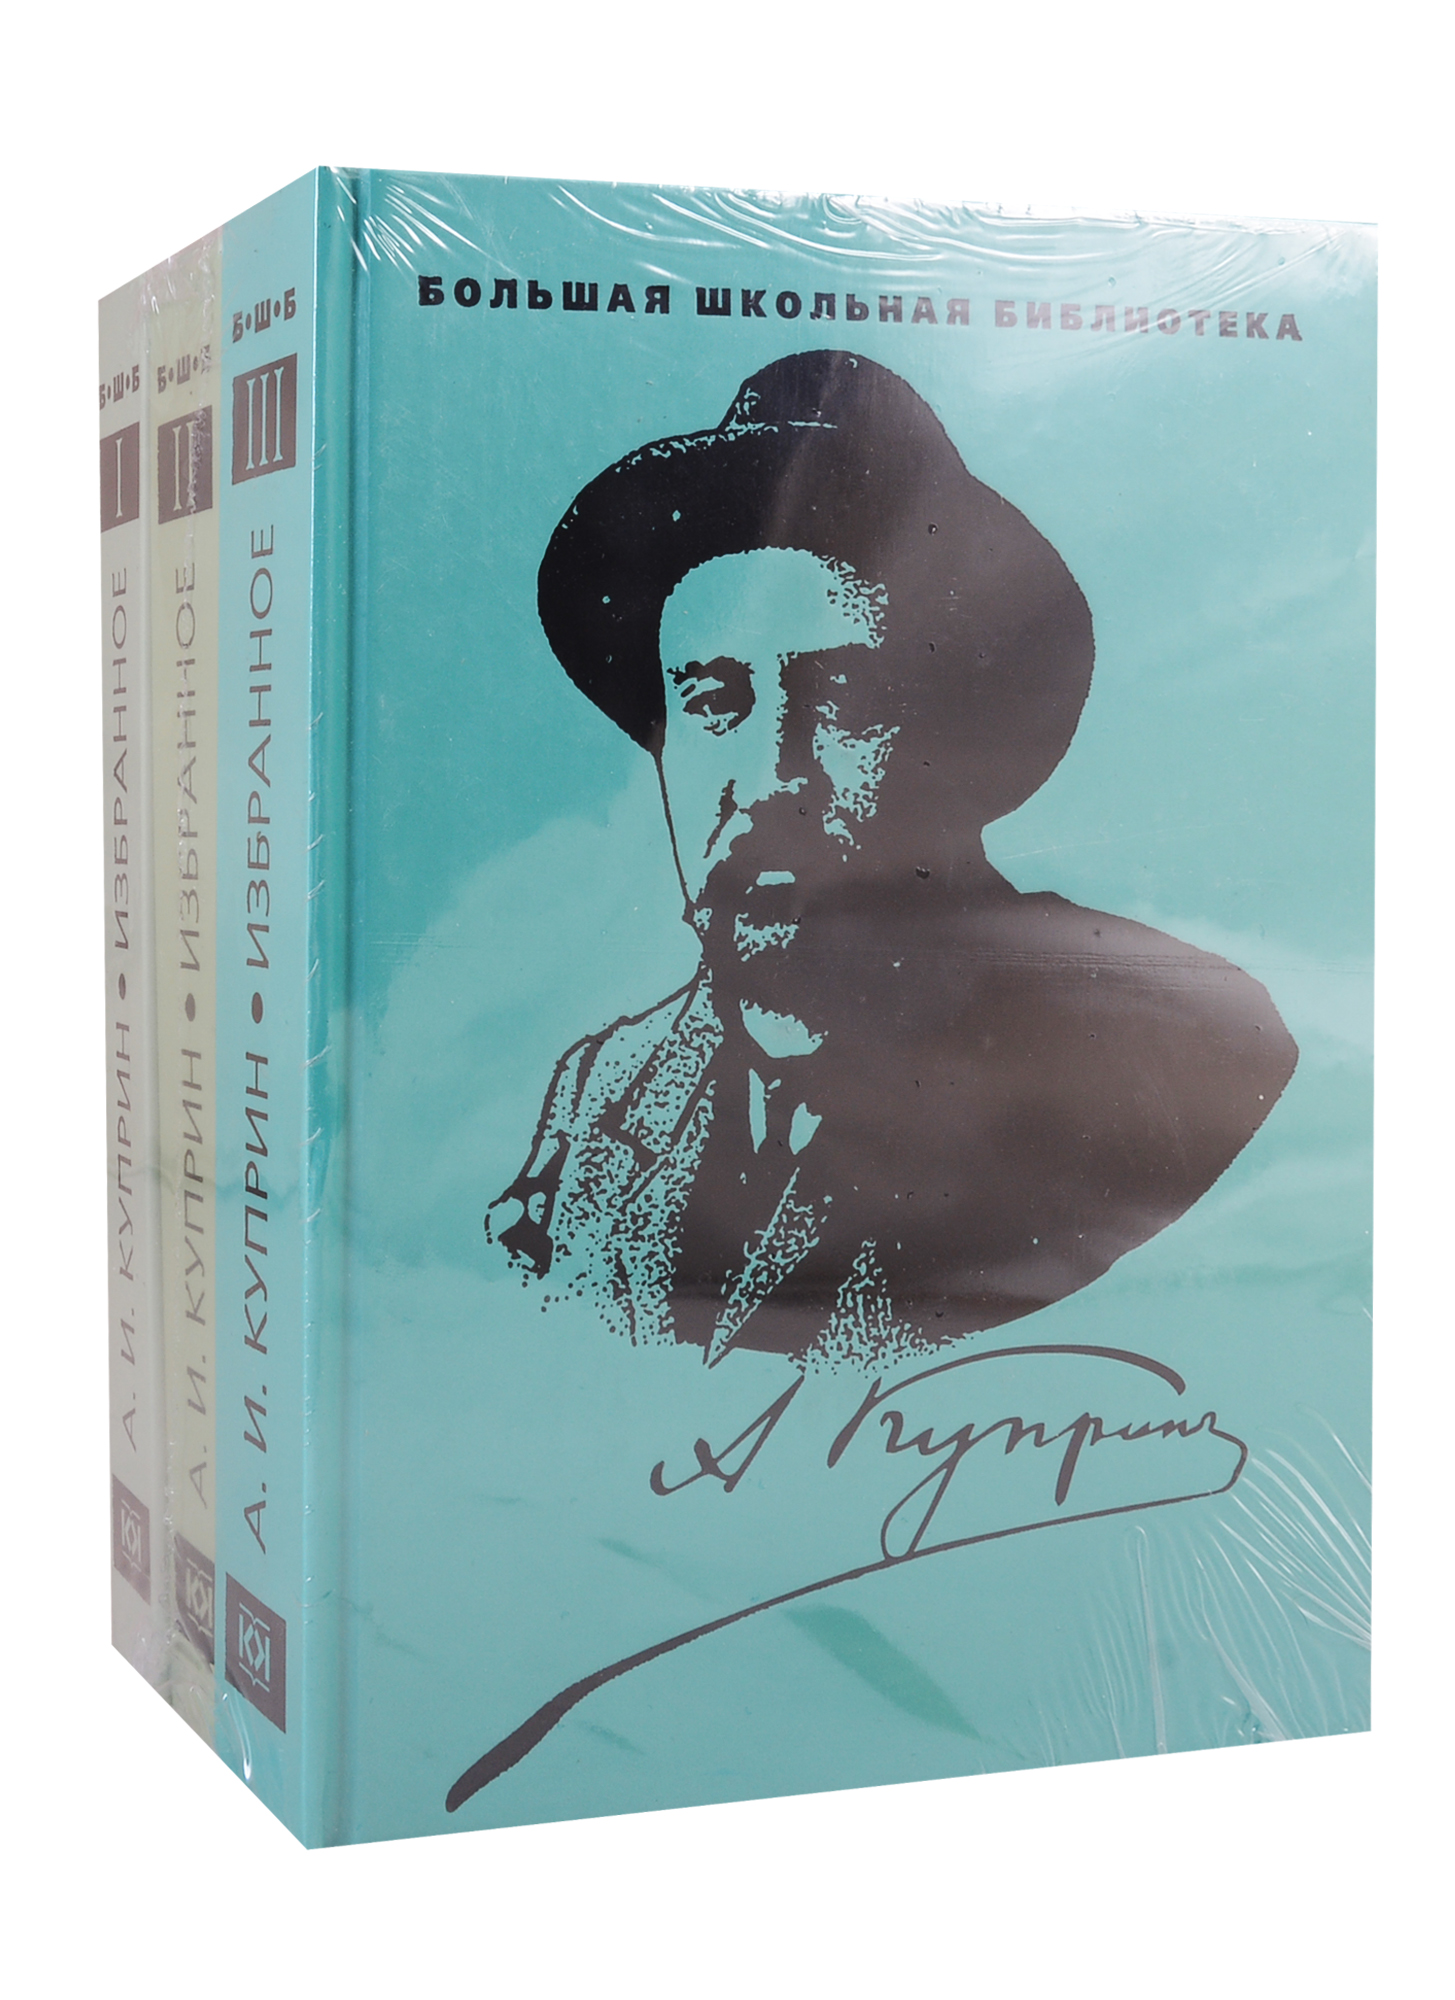 Куприн Александр Иванович Избранное. В 3 томах (комплект из 3 книг)